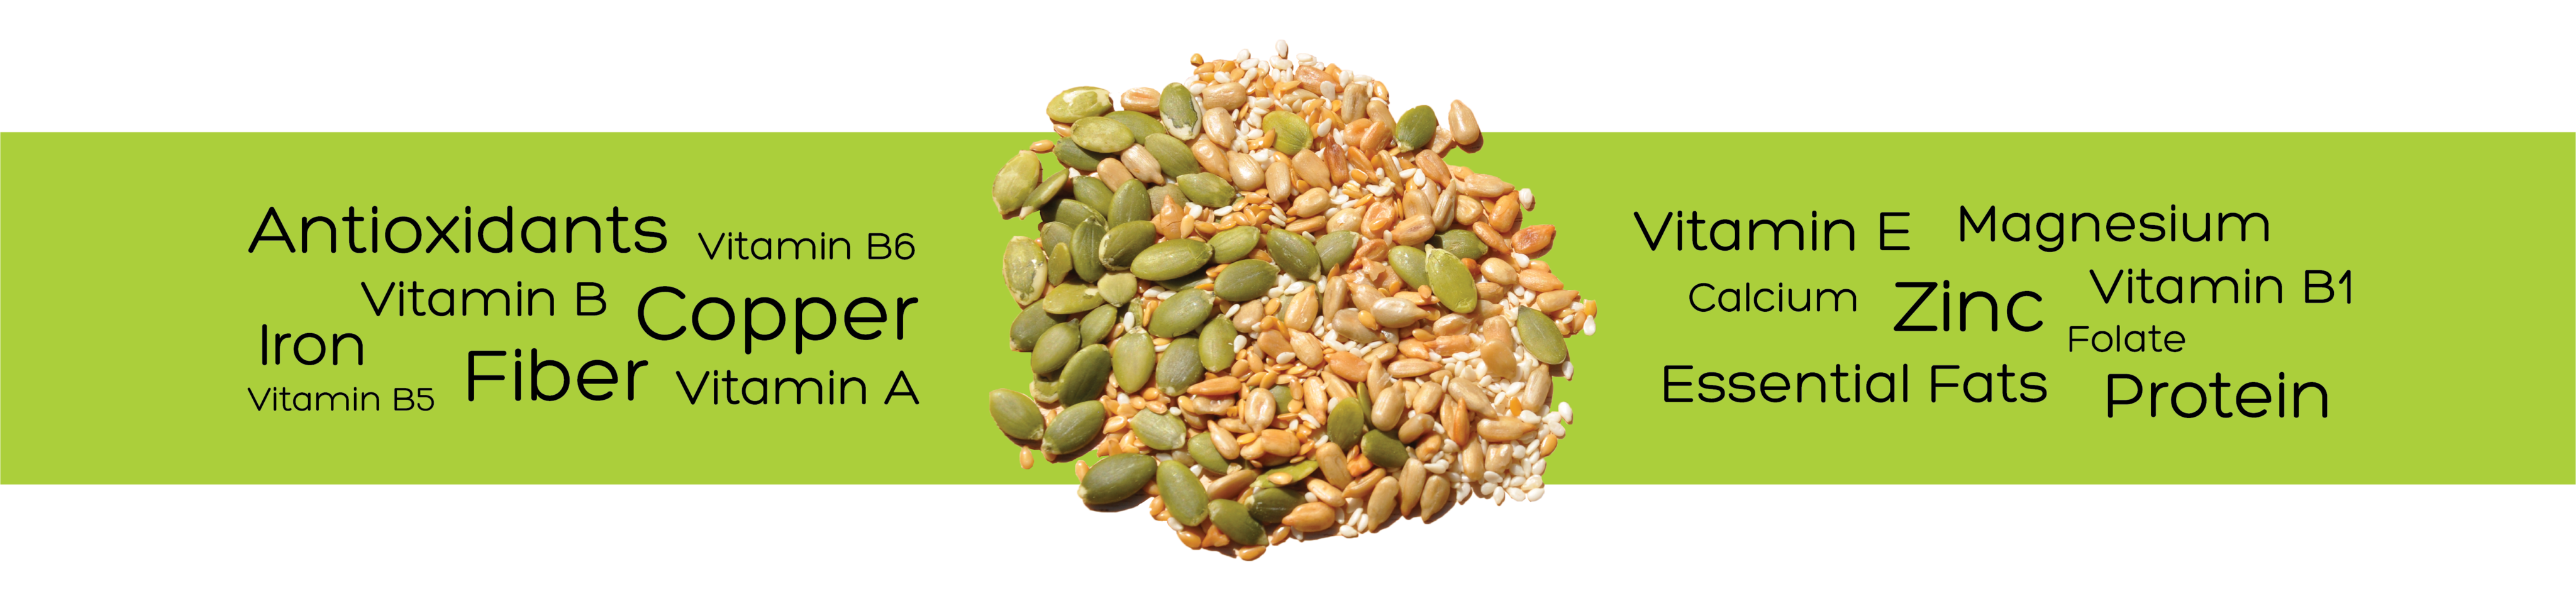 nuts clipart vitamin e